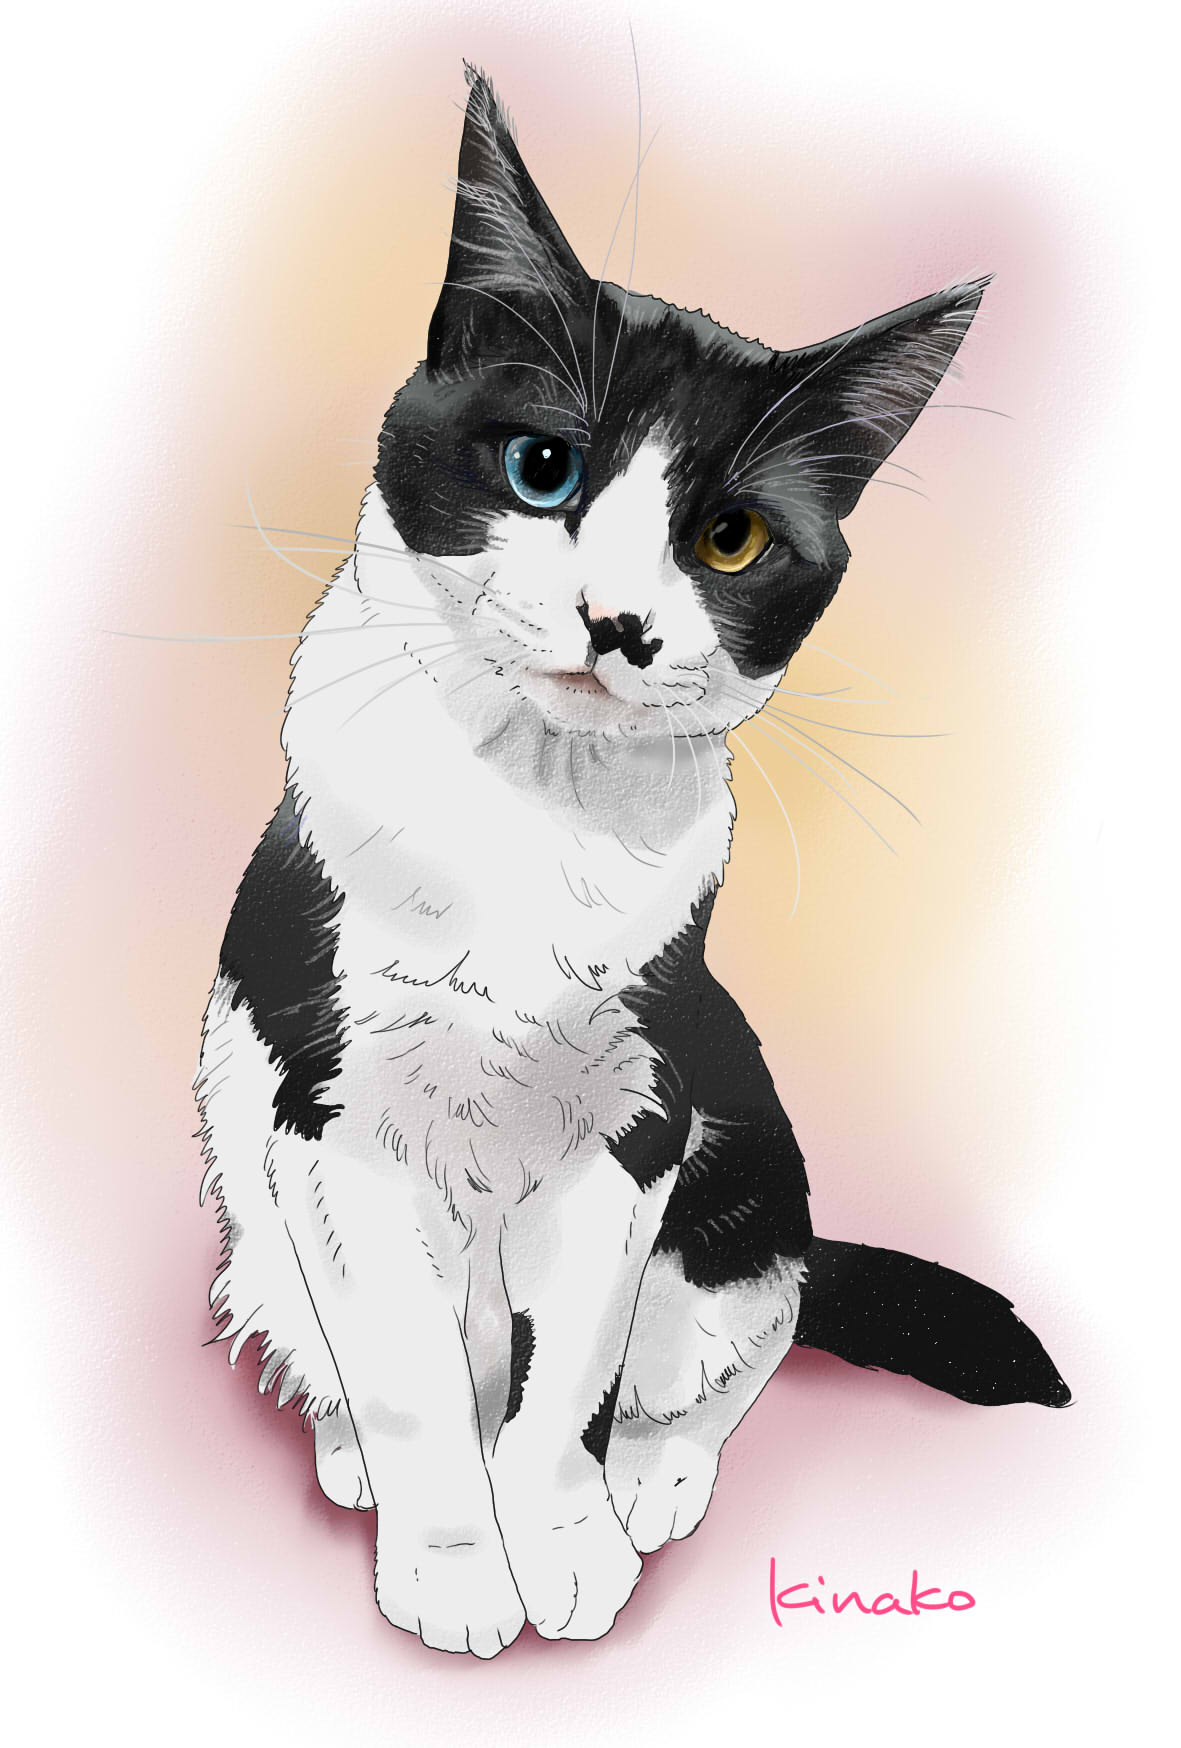 きなこ 猫の絵を描いています 鈴猫さんの白黒ハチワレの子猫のハチちゃん イラストで描かせていただきました 体を傾げて何か話しかけてくるようなポーズがなんてかわいいのでしょう 目がオッドアイなんでしょうか ブルーと琥珀色の